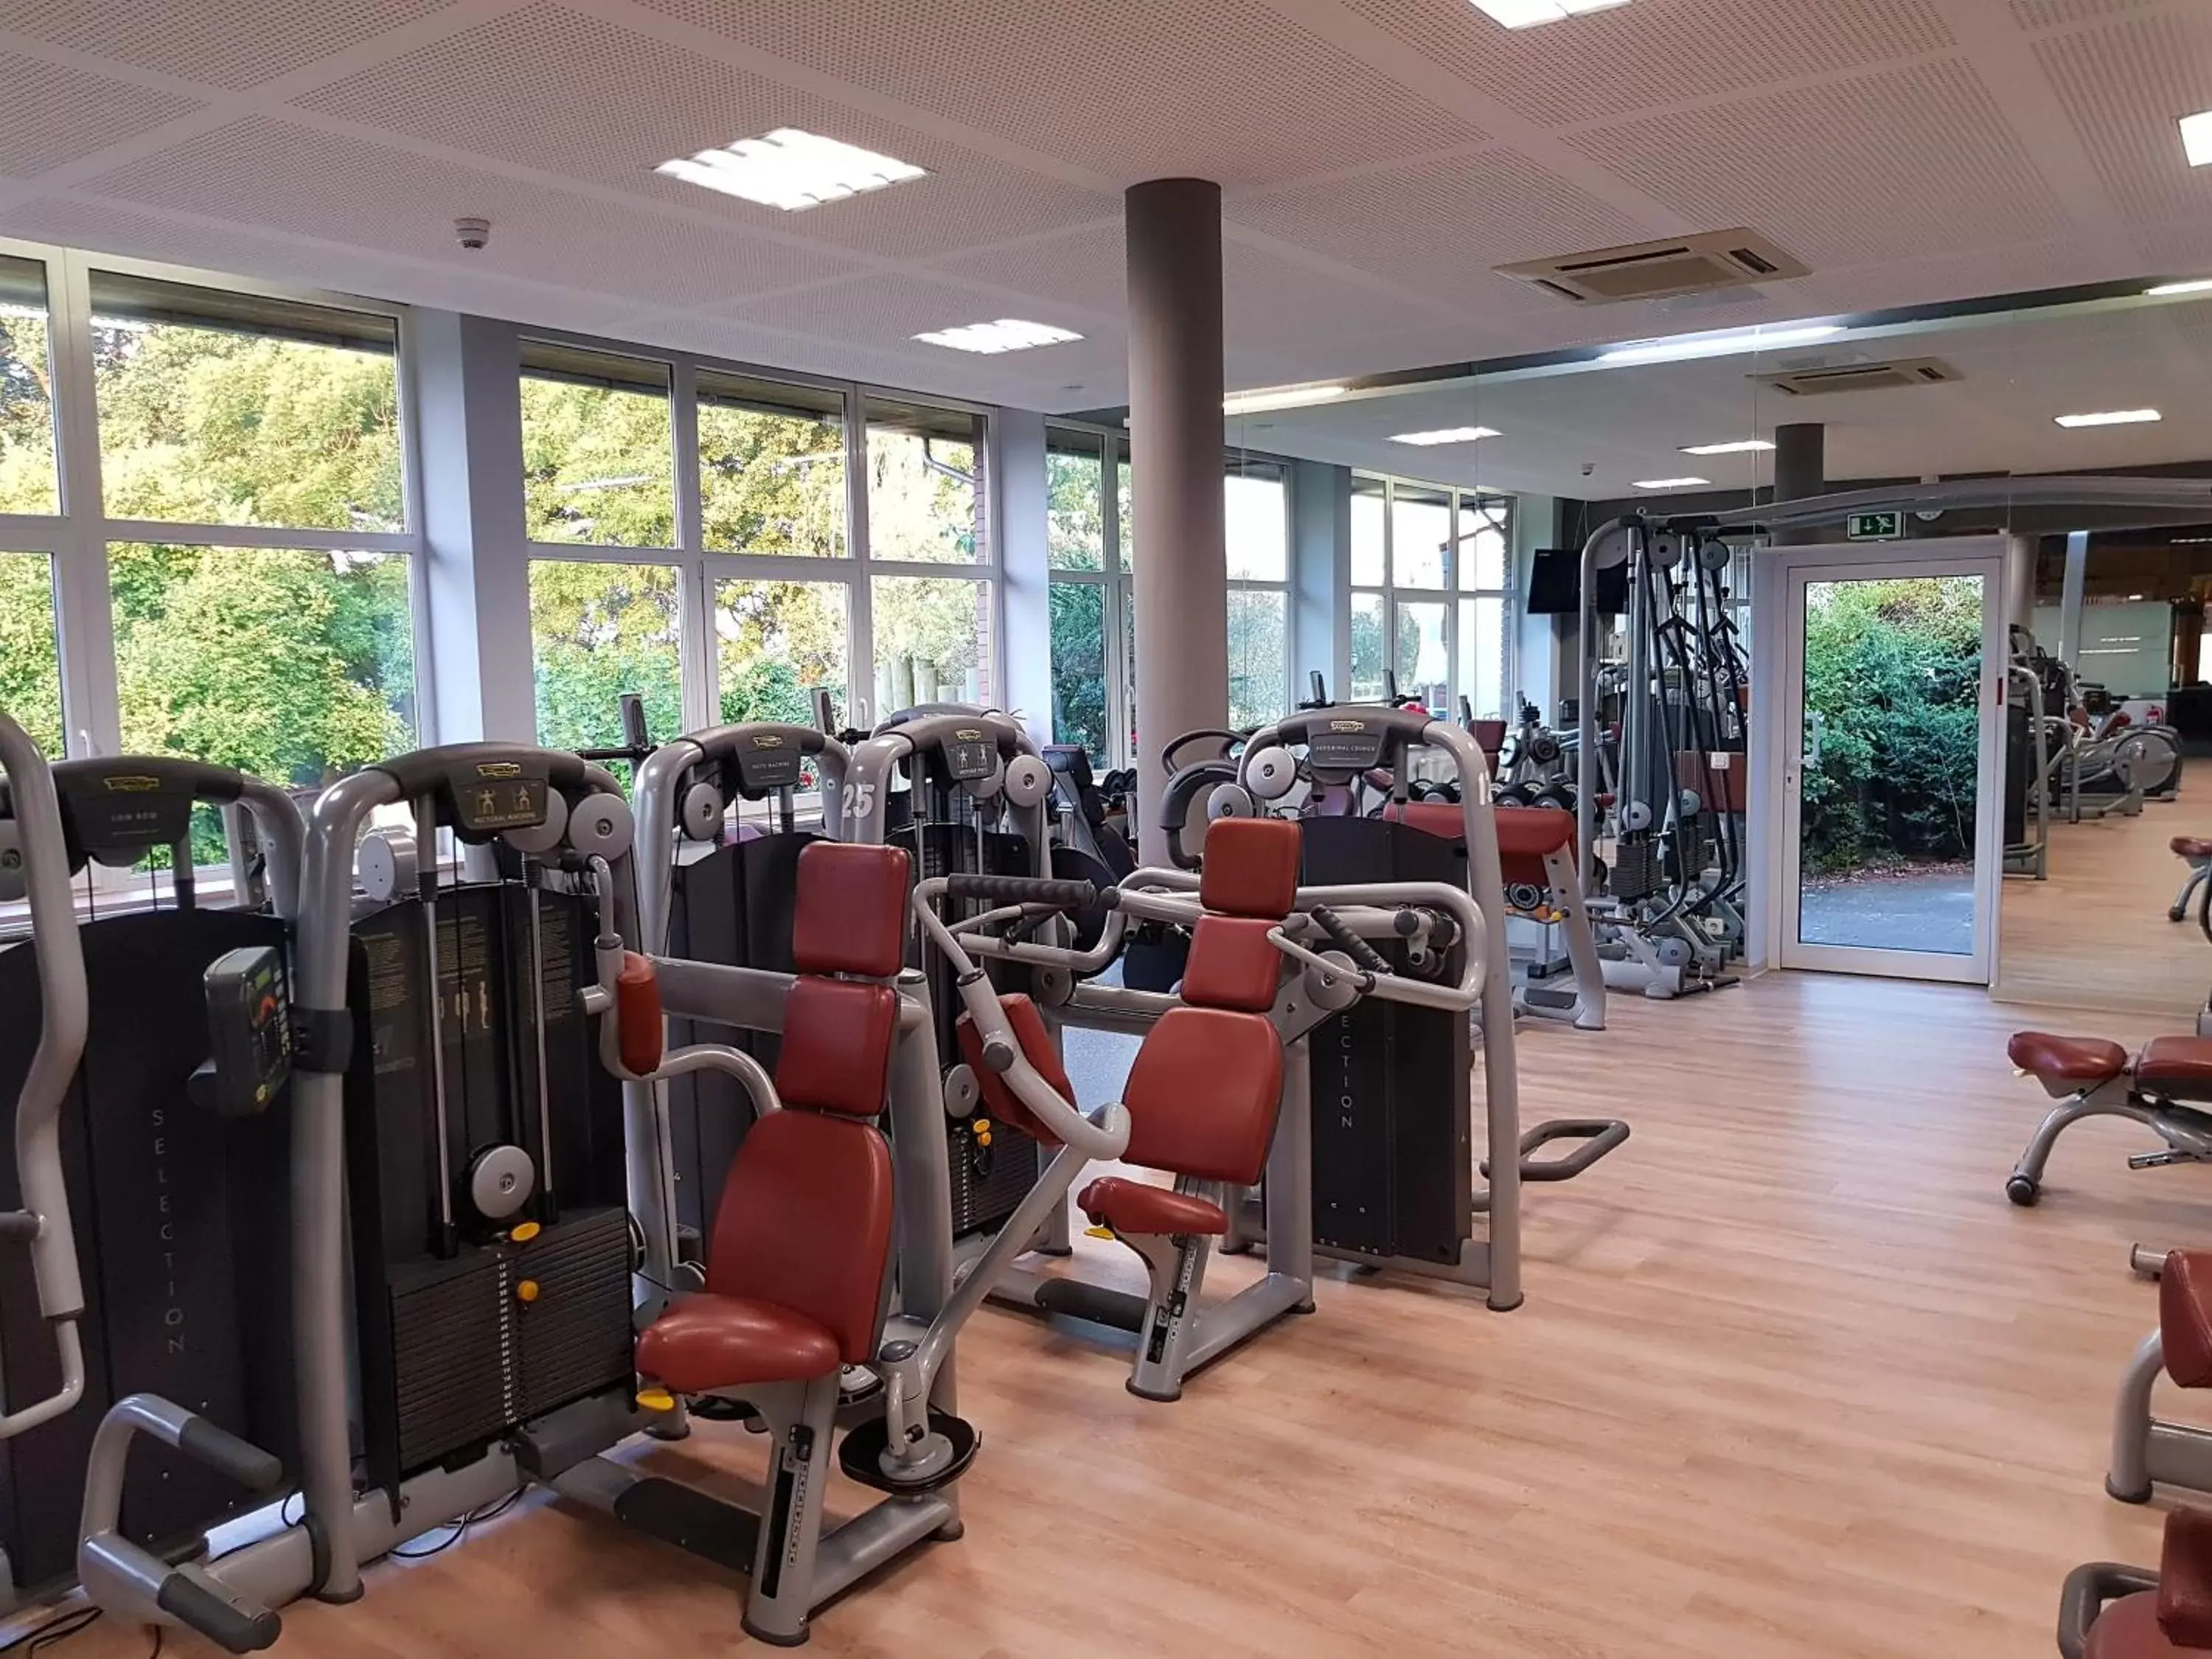 Fitness centre/facilities, Fitness Center/Facilities in Sport- & Vital-Resort Neuer Hennings Hof